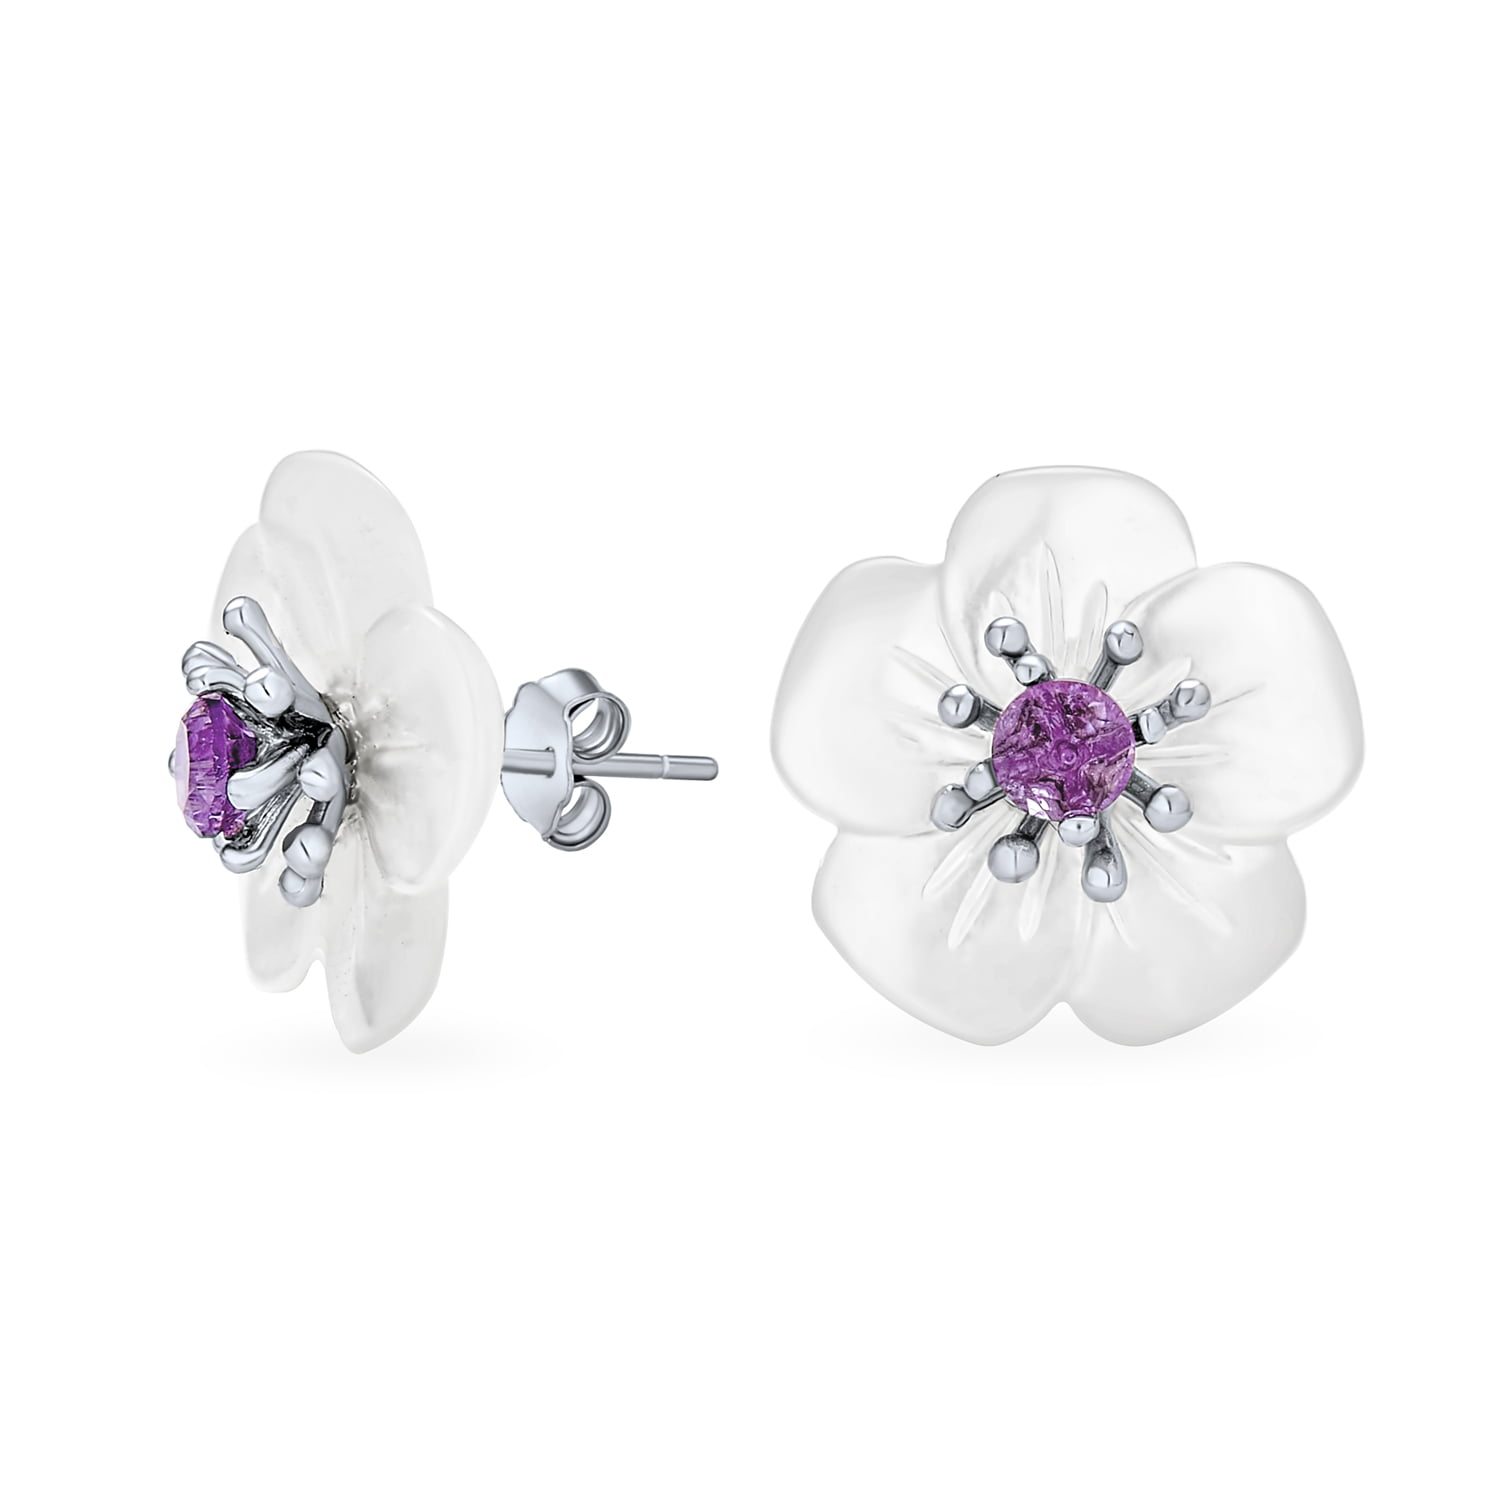 3mm Gemstones Purple Gemstones. Faceted Amethyst Sterling Silver Stud Earrings